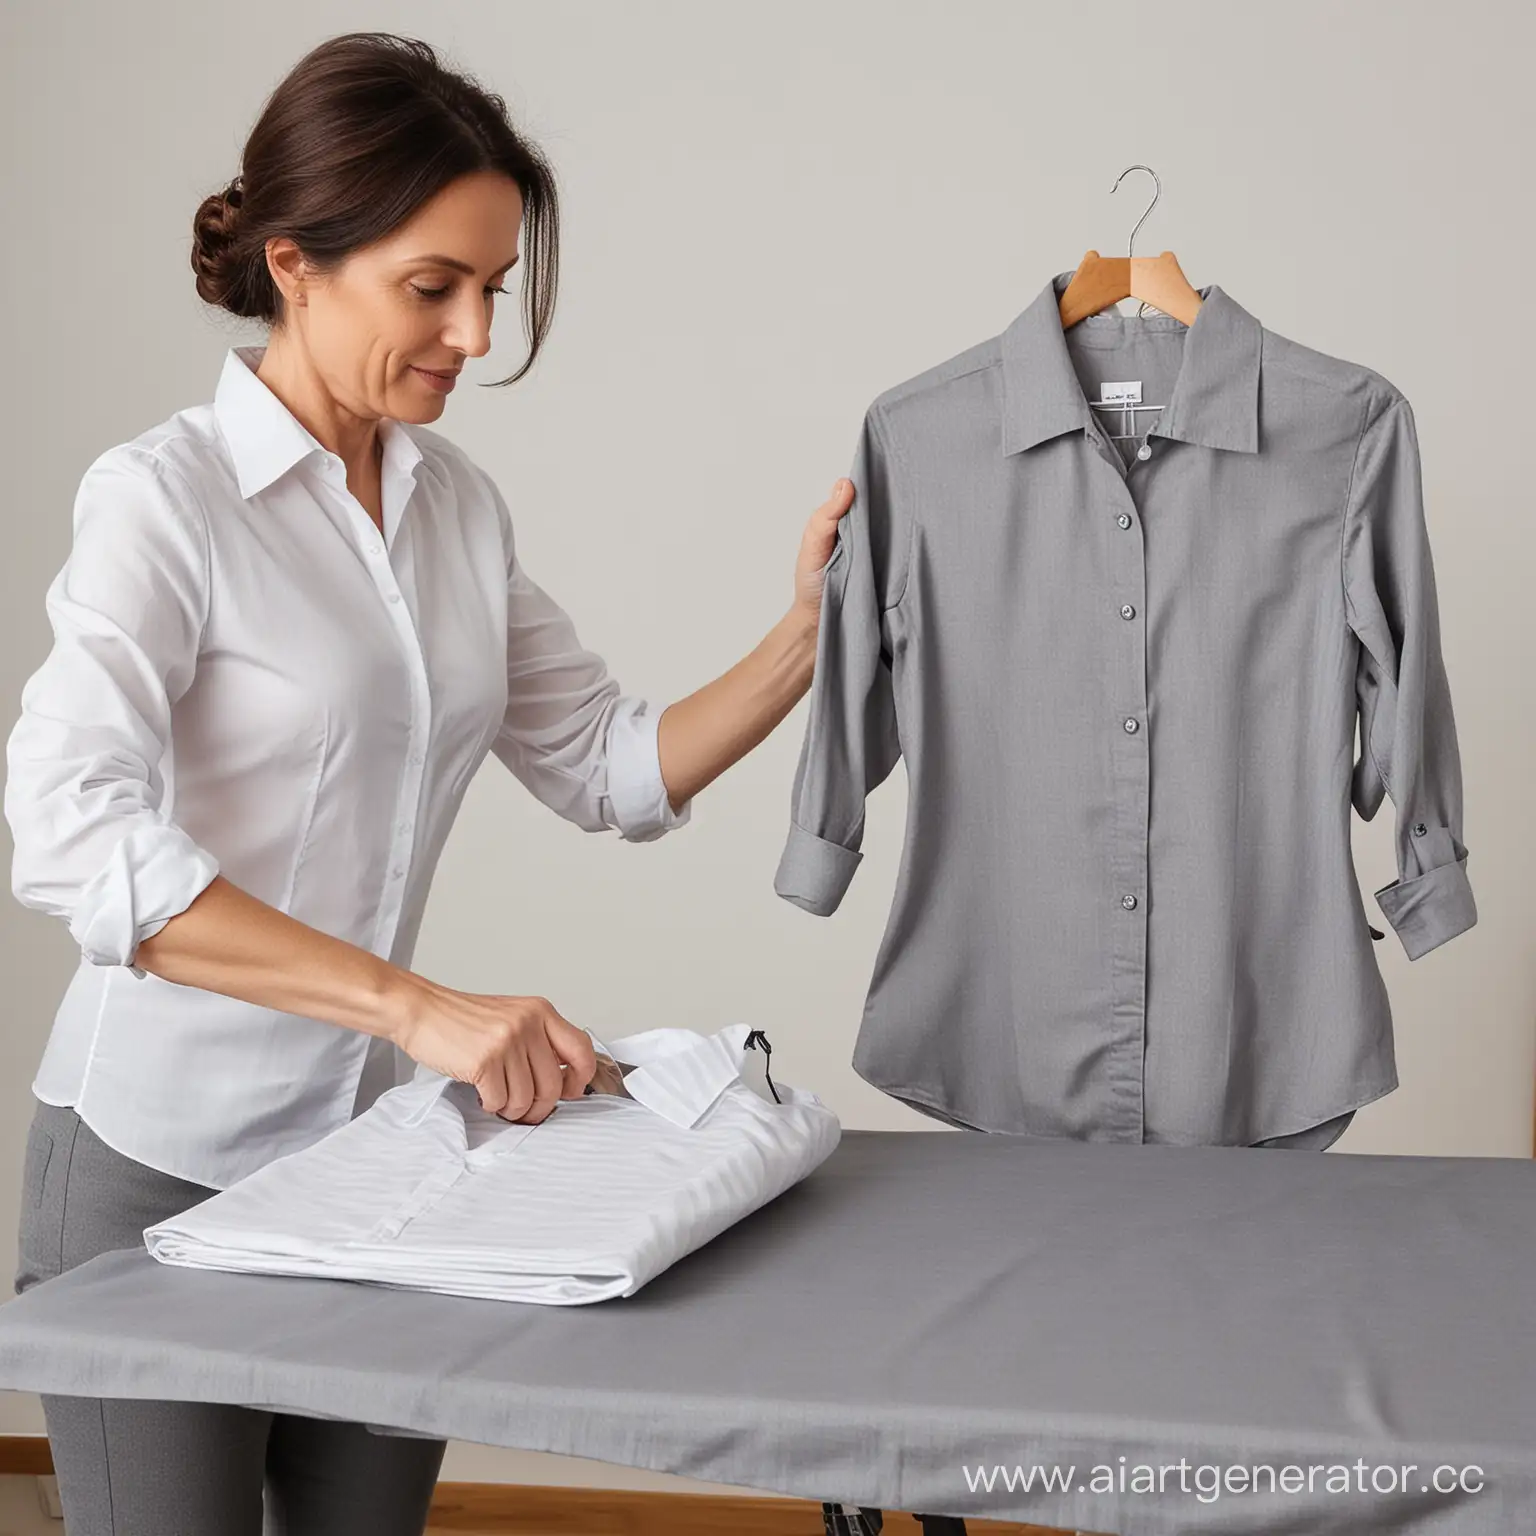 Женщина 40 лет гладит блузку утюгом на гладильной доске серого цвета